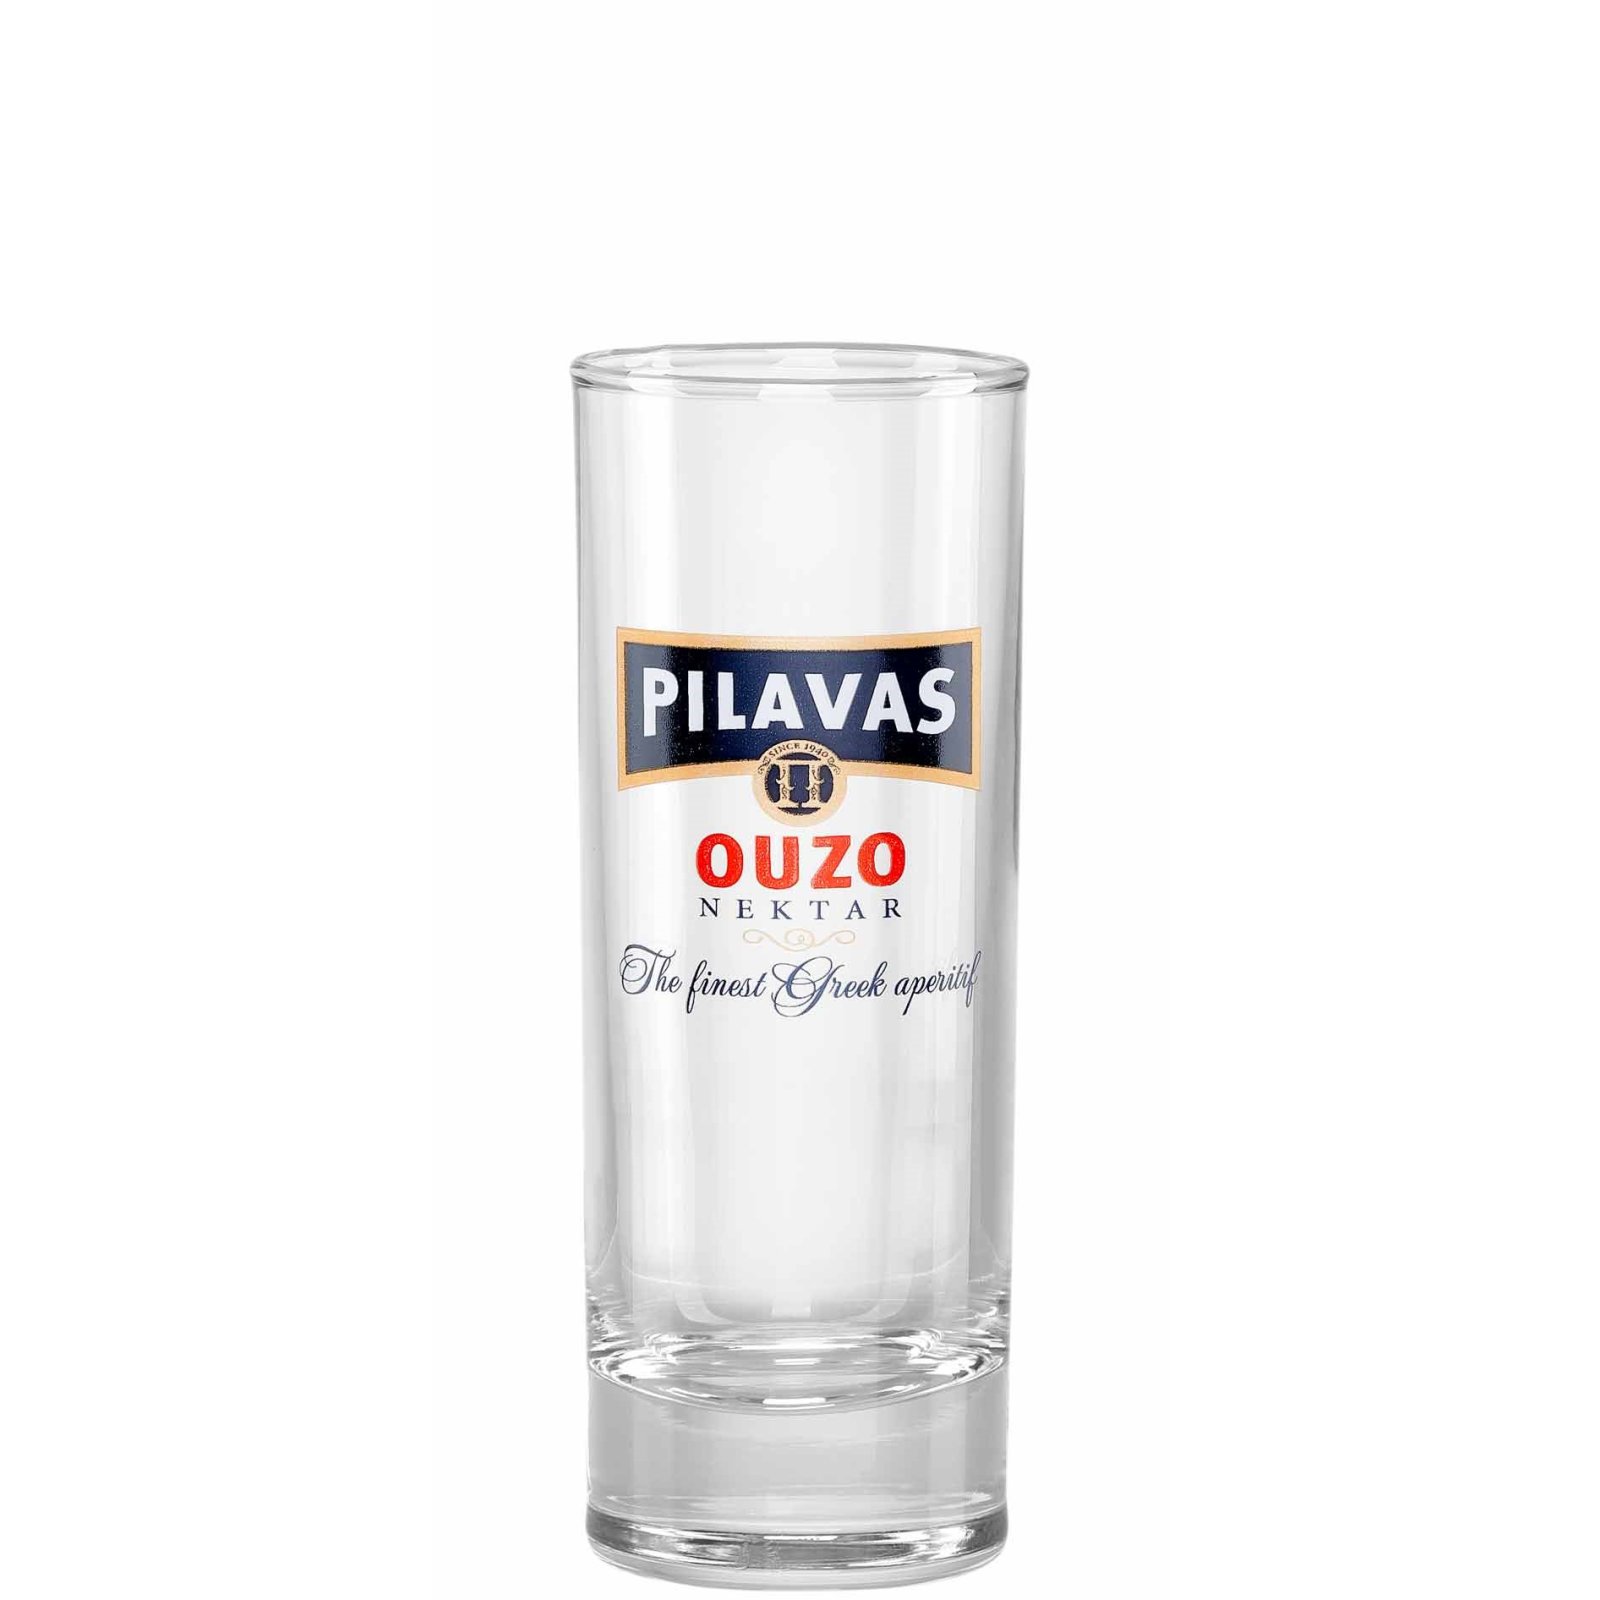 Pilavas Nektar Original Ouzo Glas 18cl bei Jassas kaufen, 3,99 €